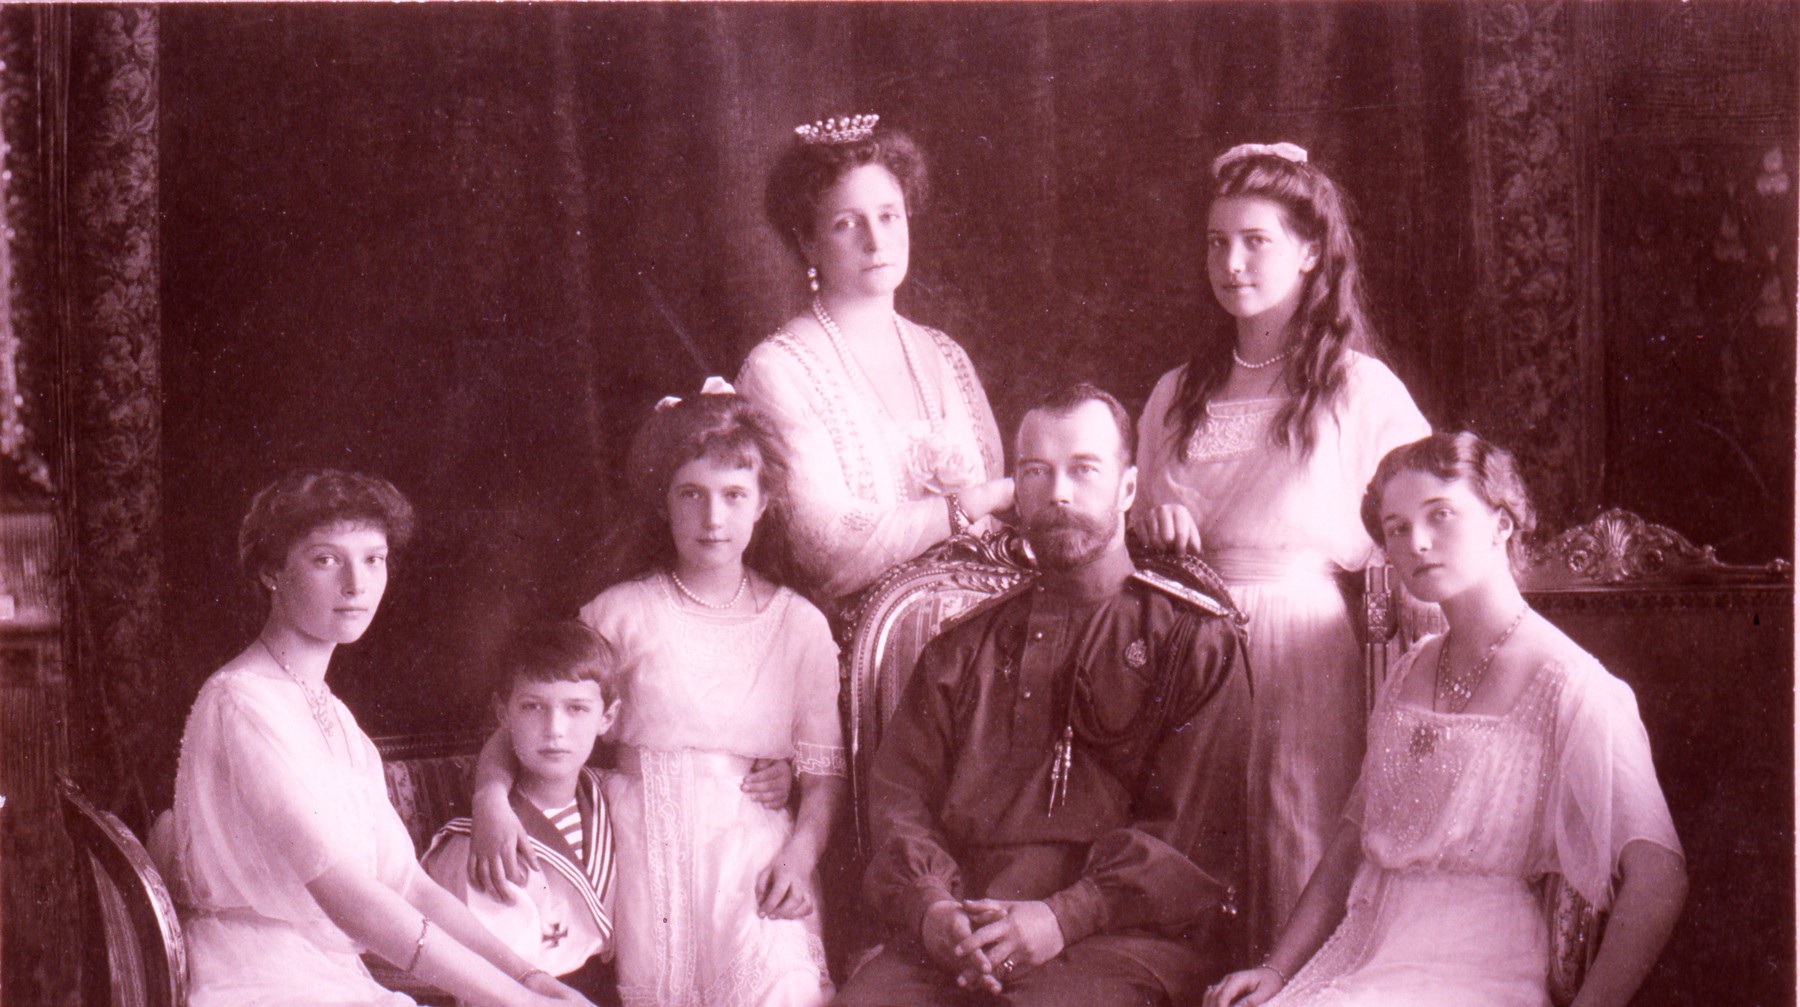 Dailystorm - К 100-летию расстрела семьи Романовых. Почему история превращается в политику